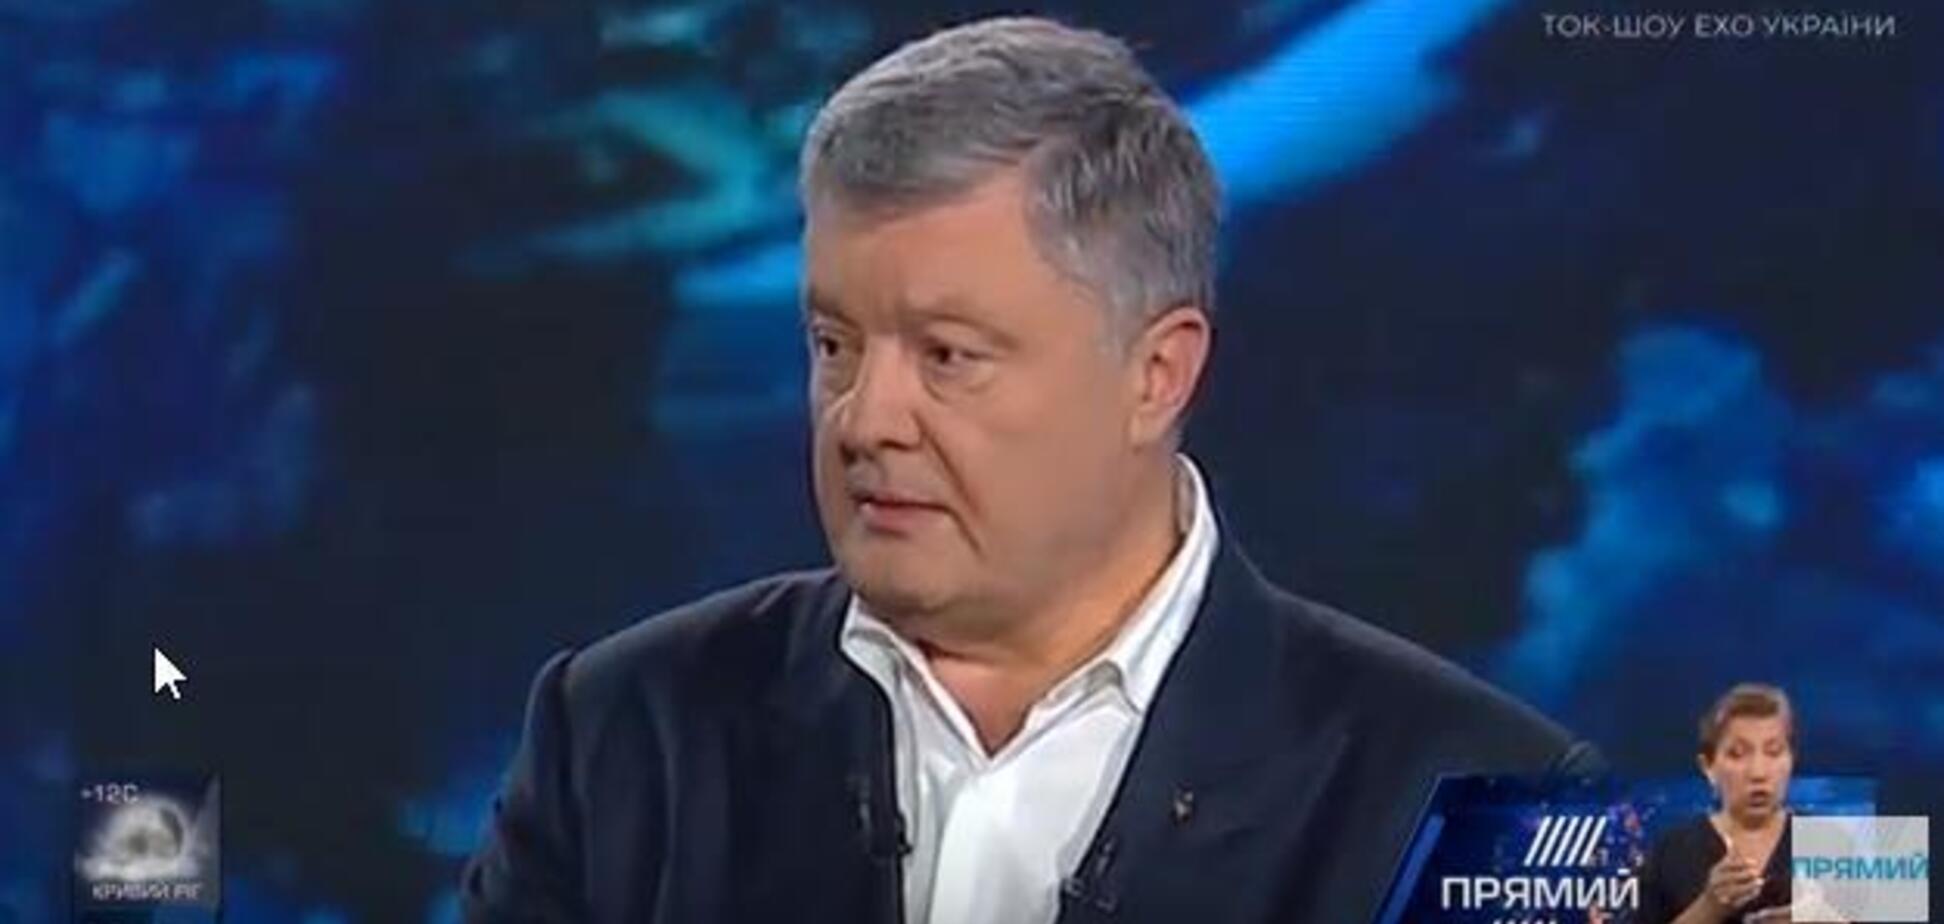 Петр Порошенко в телеэфире Прямого